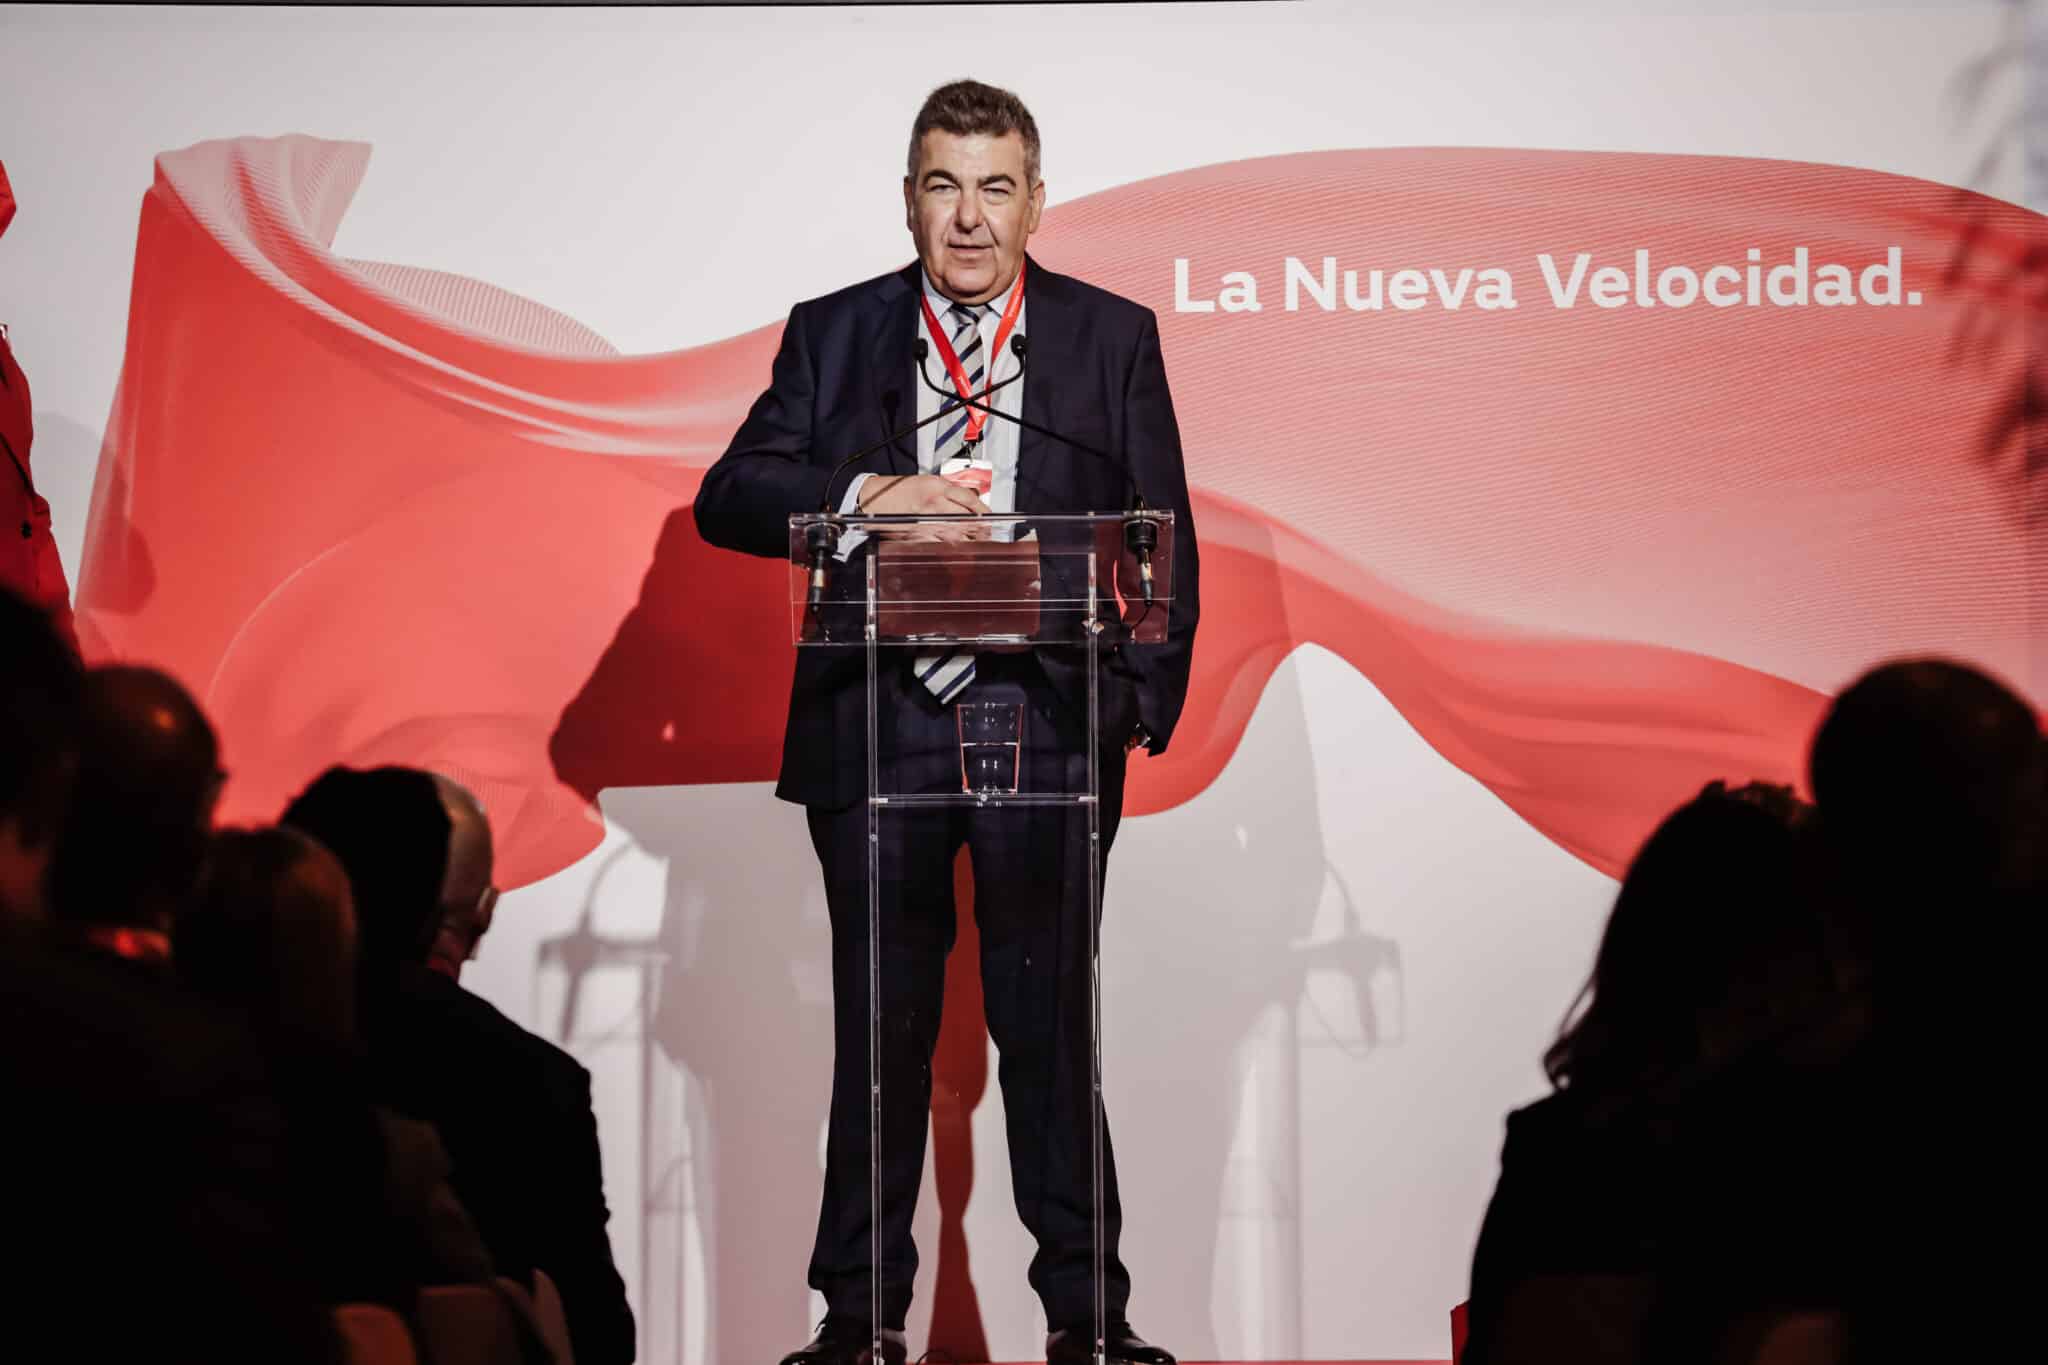 Ilsa comenzará a operar en la alta velocidad española a finales de 2022 bajo el nombre de Iryo